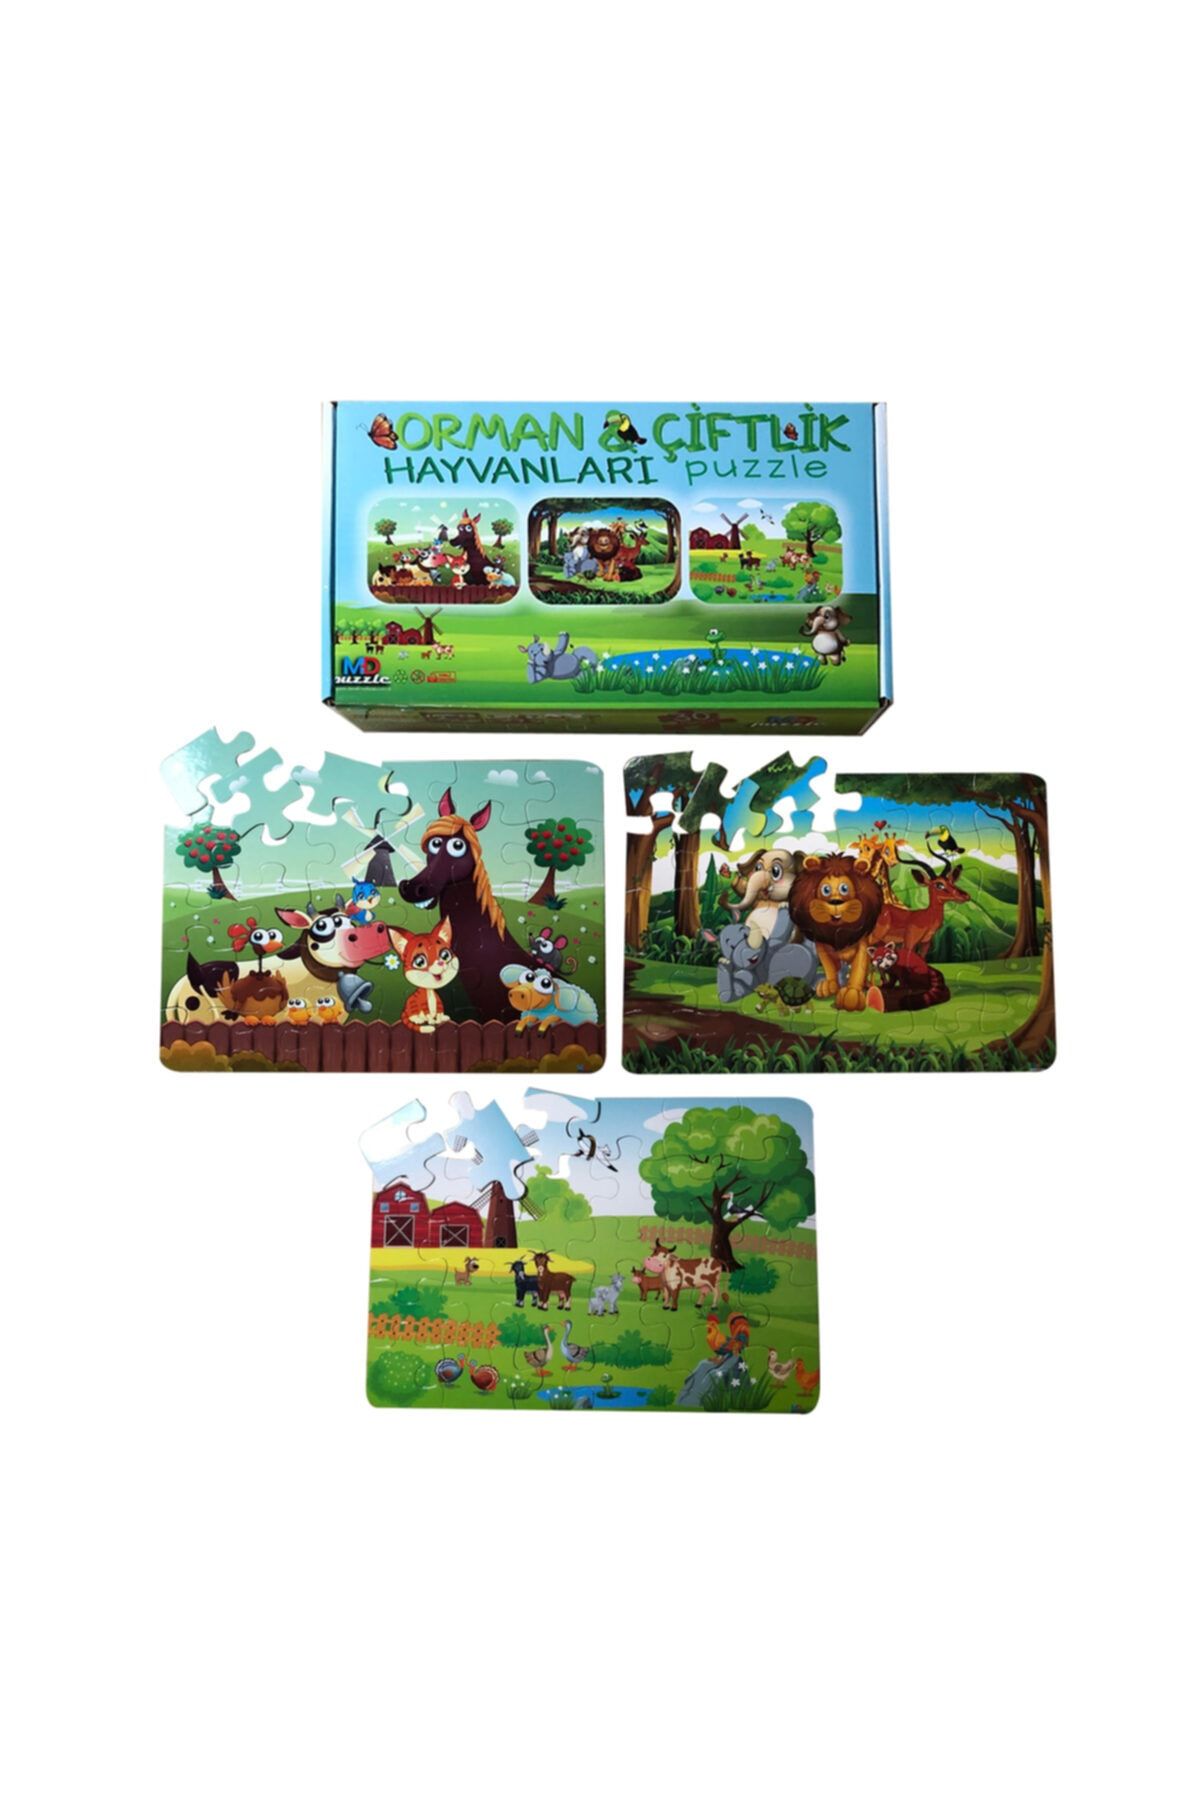 STANDART Çocuklar Için Eğitici Orman Çiftlik Hayvanları Puzzle Seti 3'lü - 90 Parça